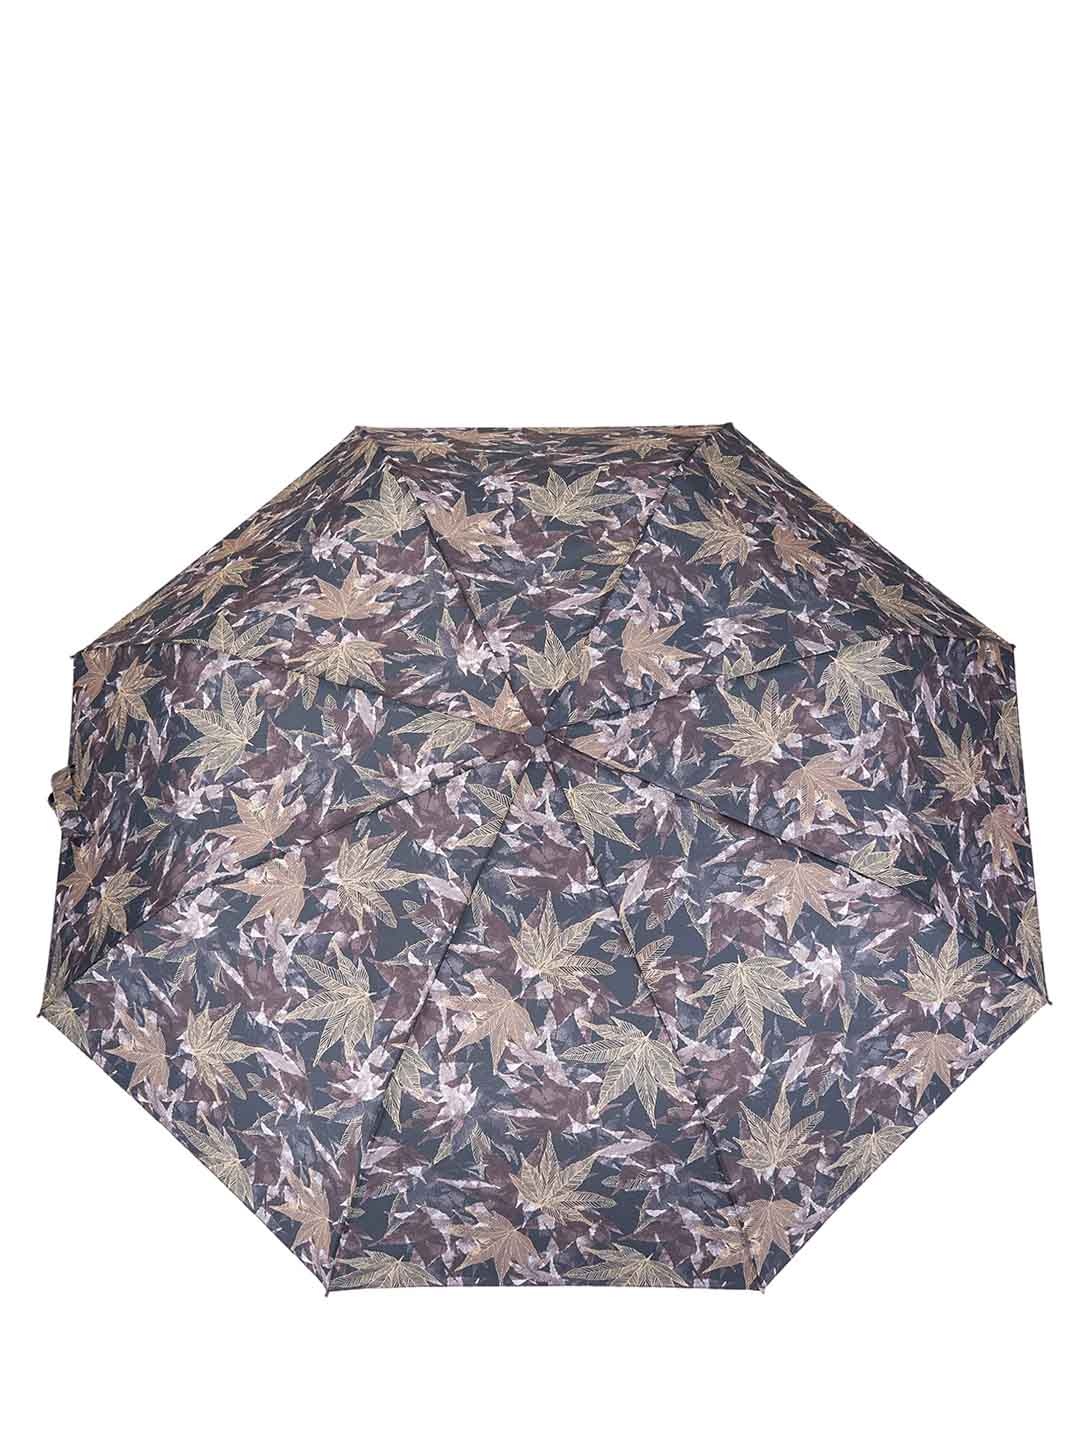 Фото Женский зонт-автомат с рисунком листьев 